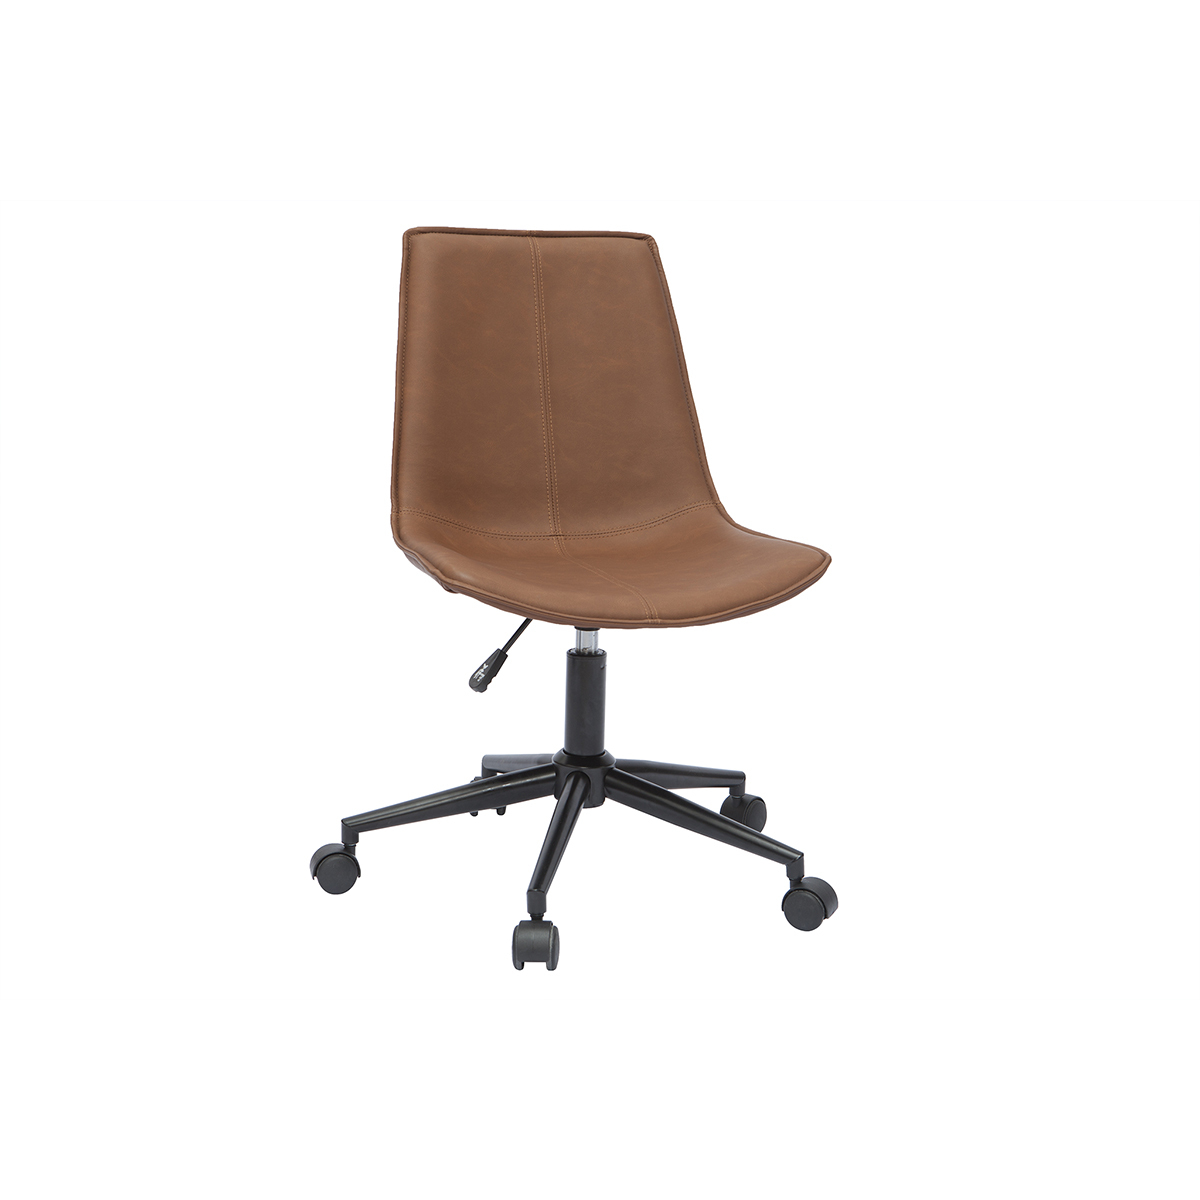 Chaise de bureau en polyuréthane marron et métal noir LISON vue1